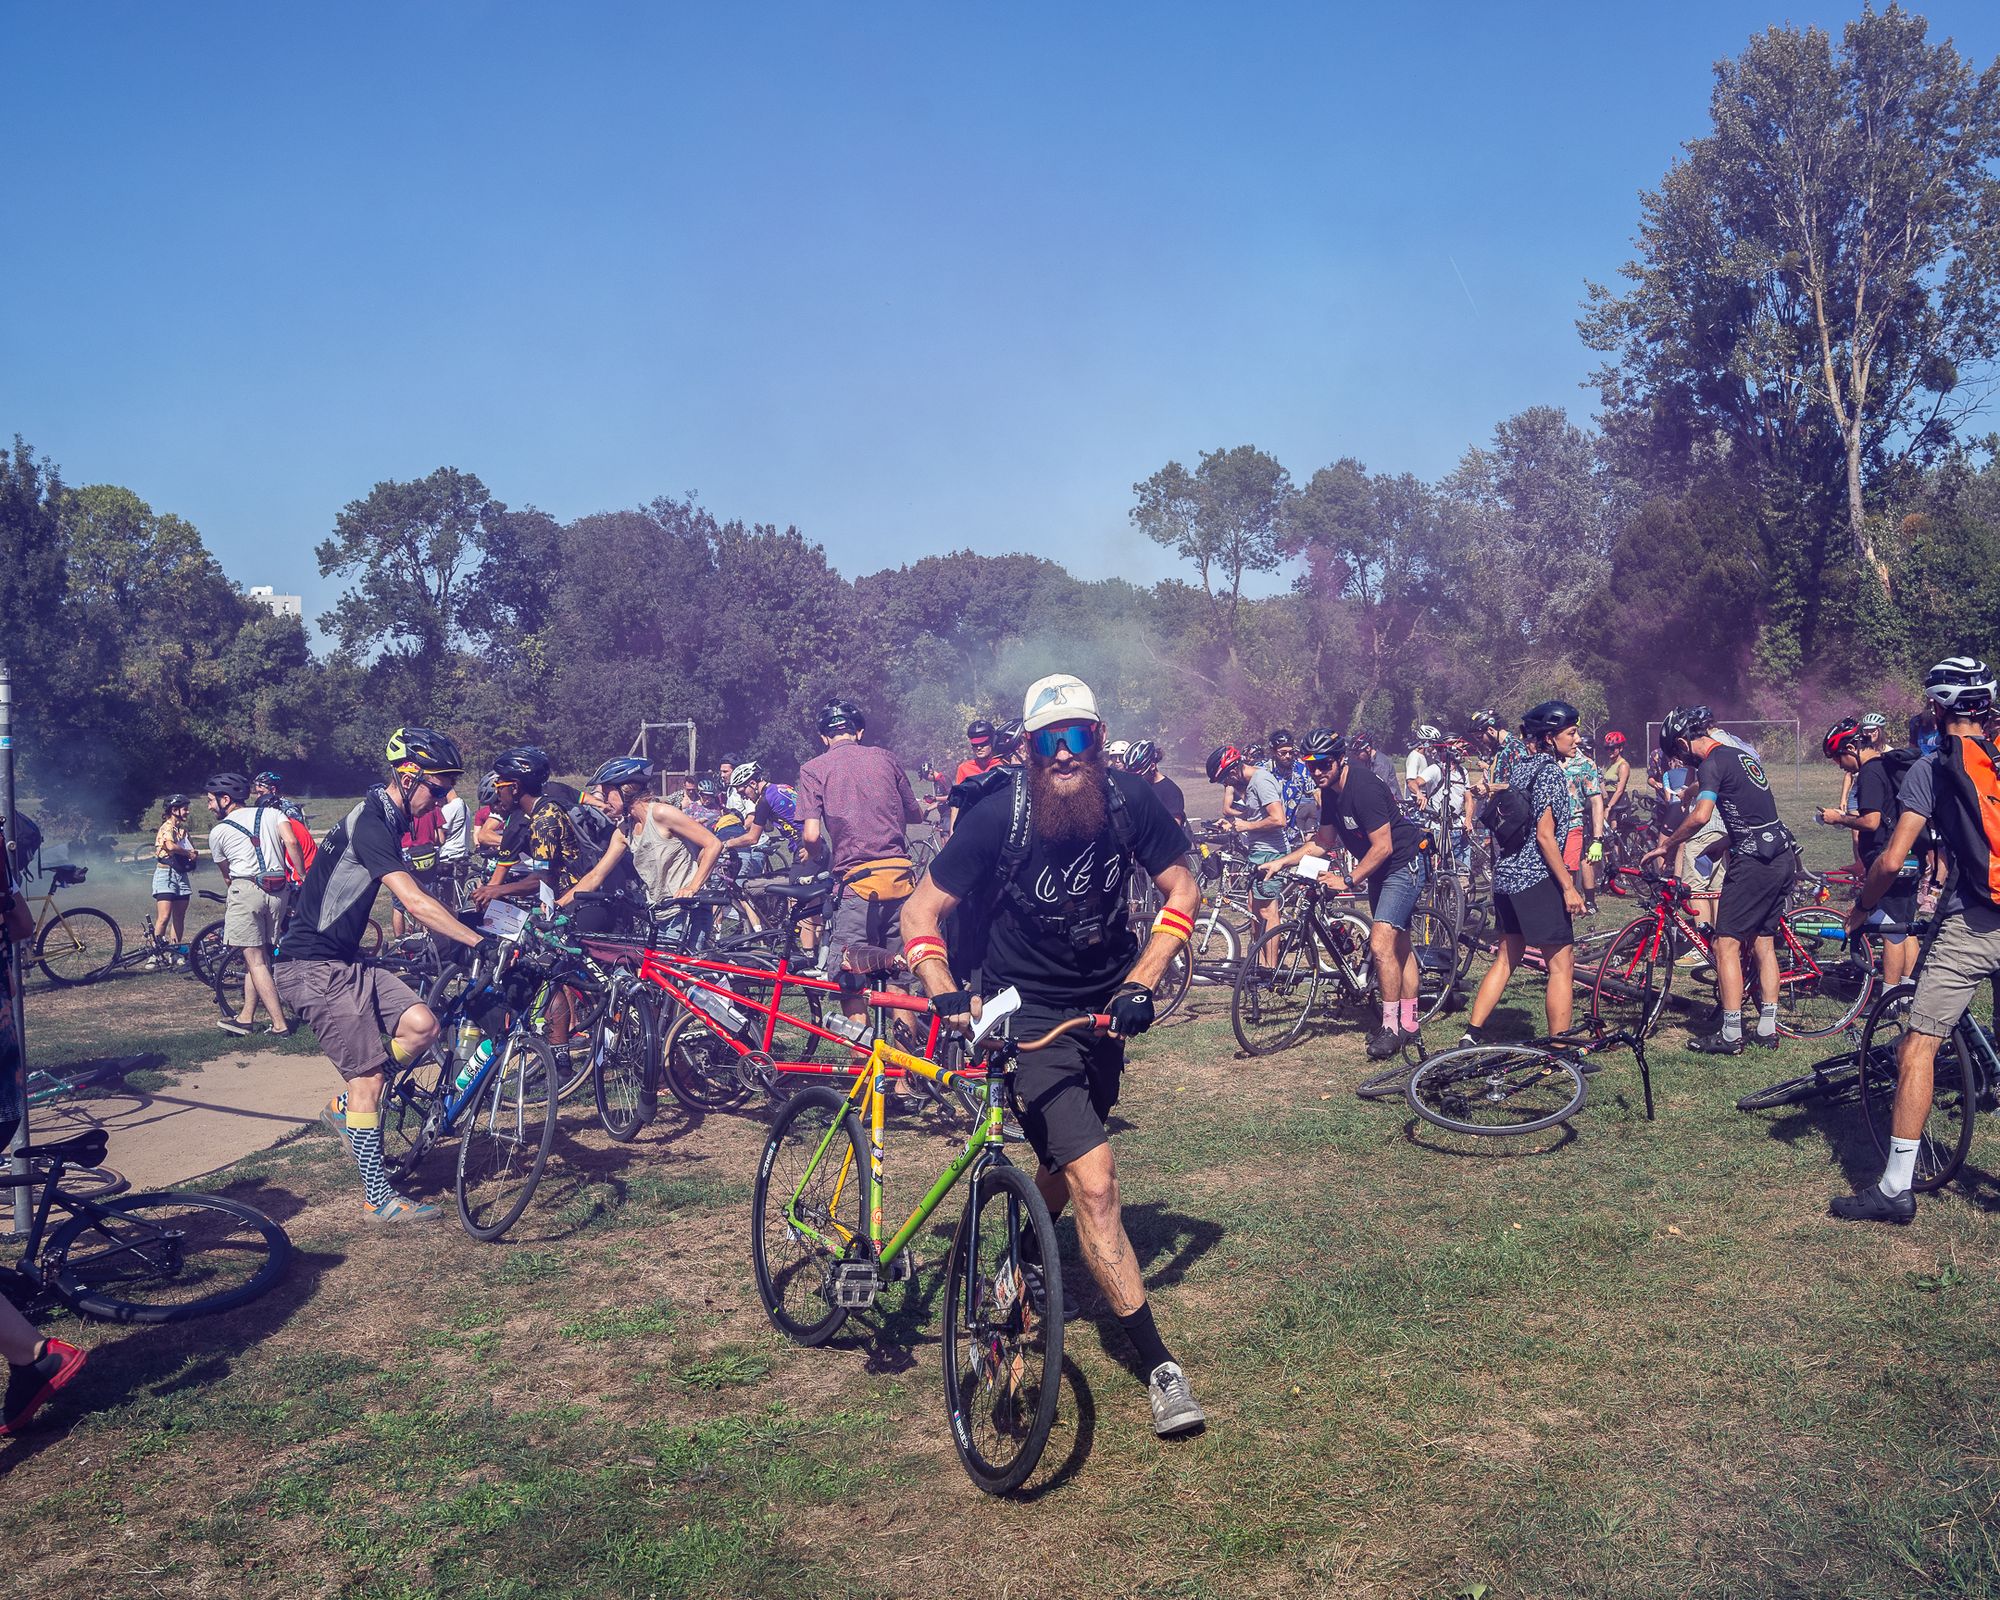 Lucas Sentou présent lors d'un évènement vélo rassemblant plusieurs personnes adeptes de la pratique vélo